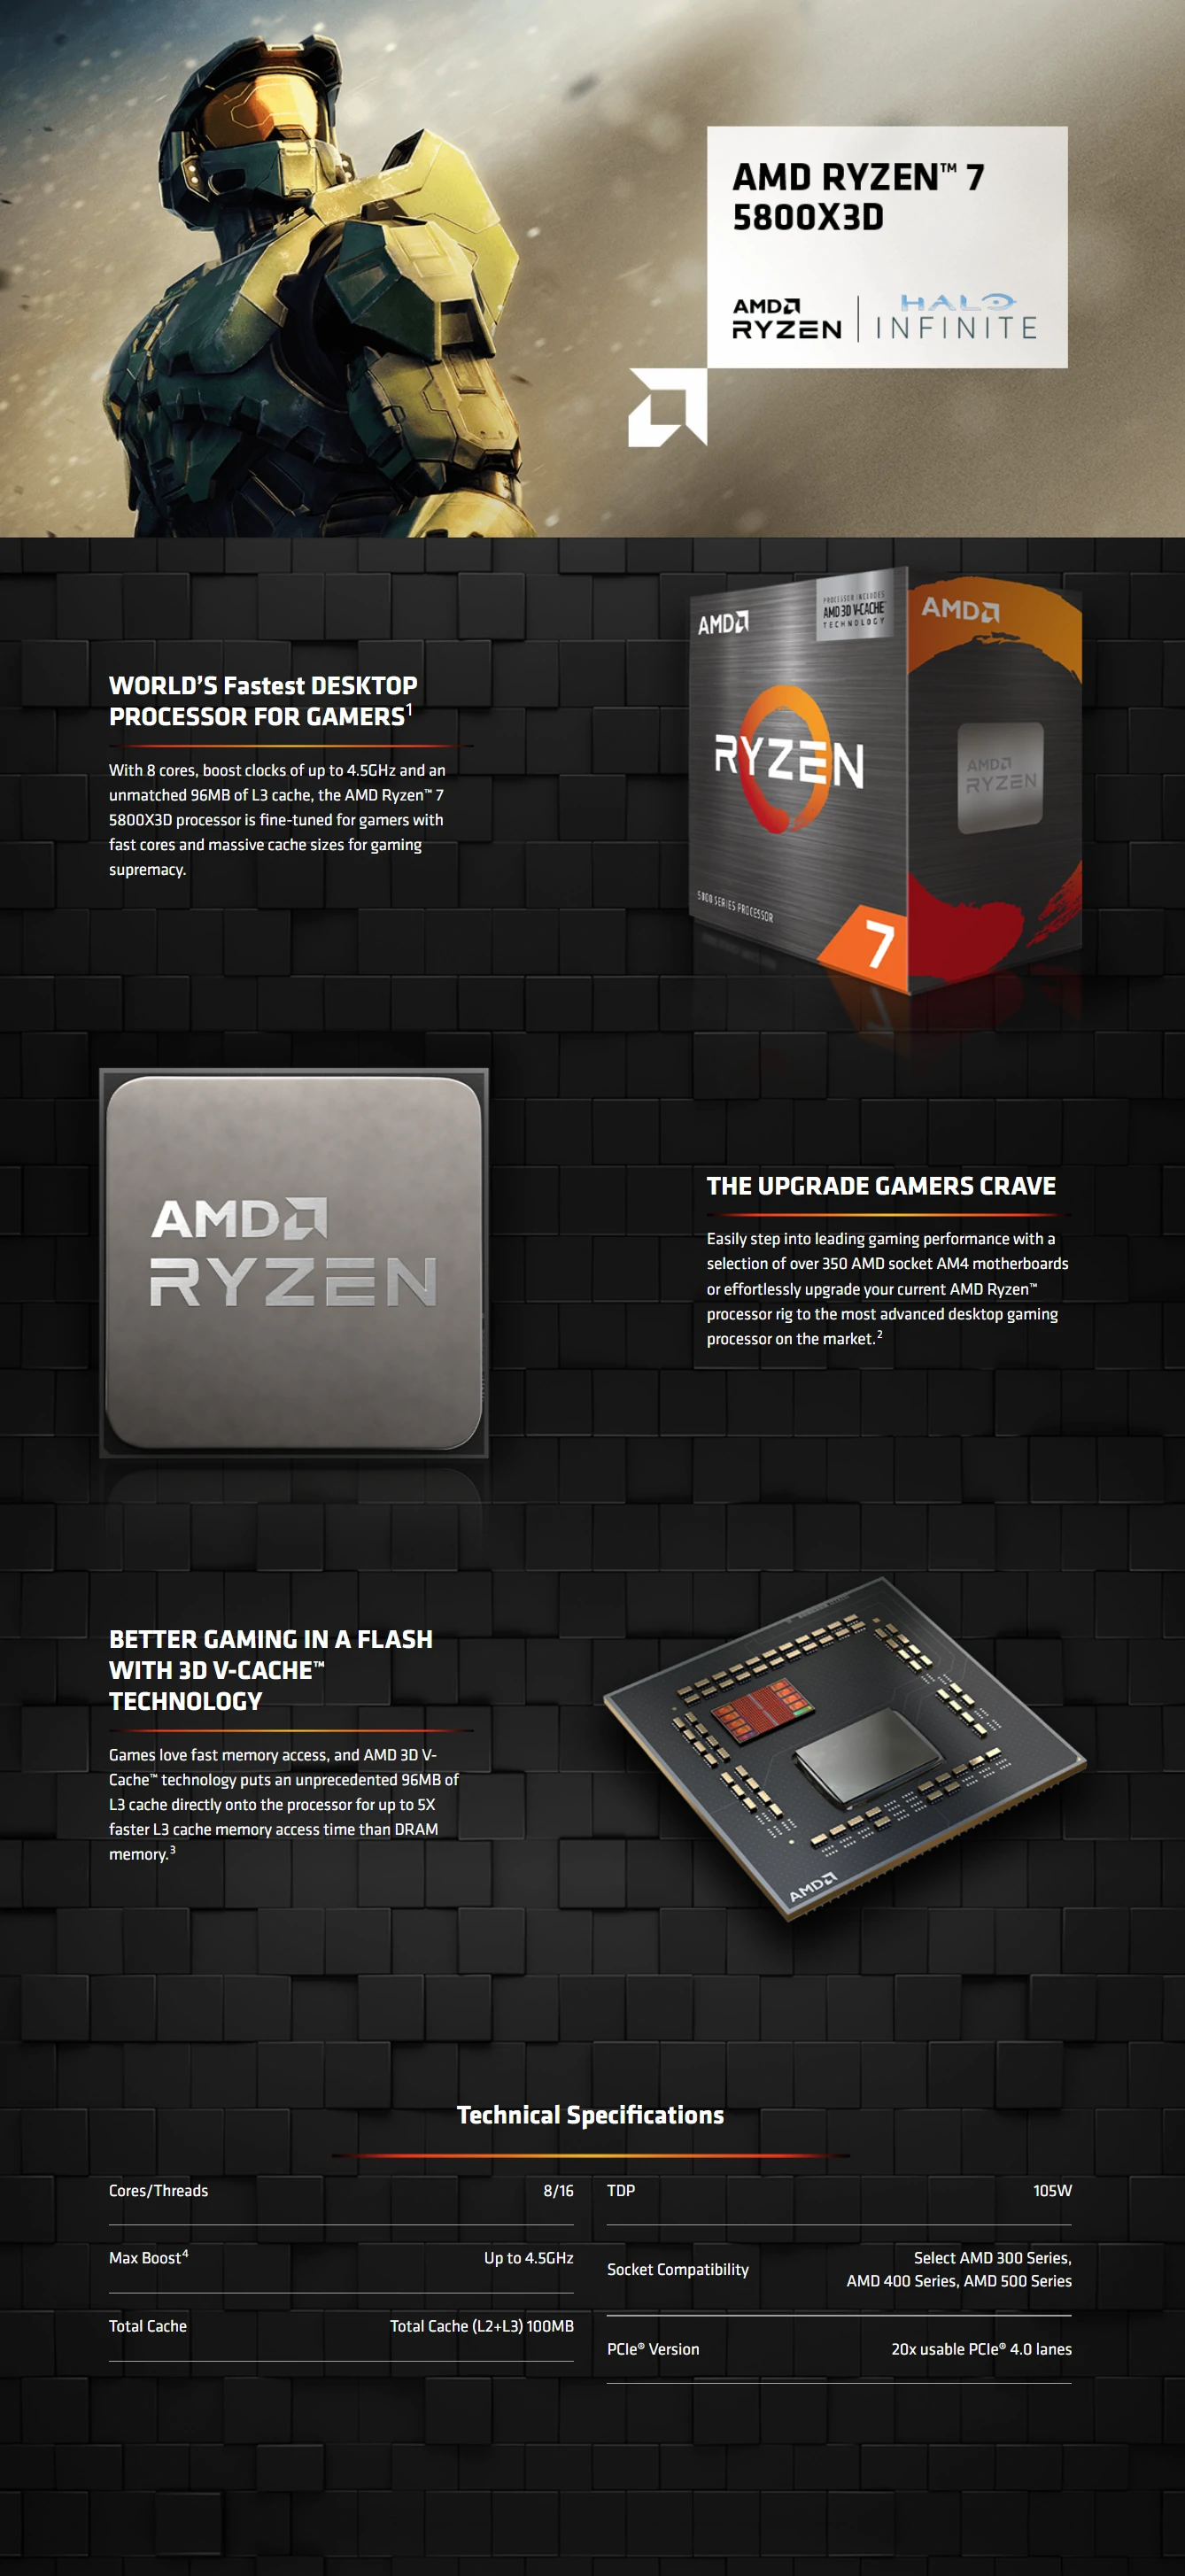 AMD Ryzen 7 5800X3D 8-core 3.4GHz 105W Desktop Processor